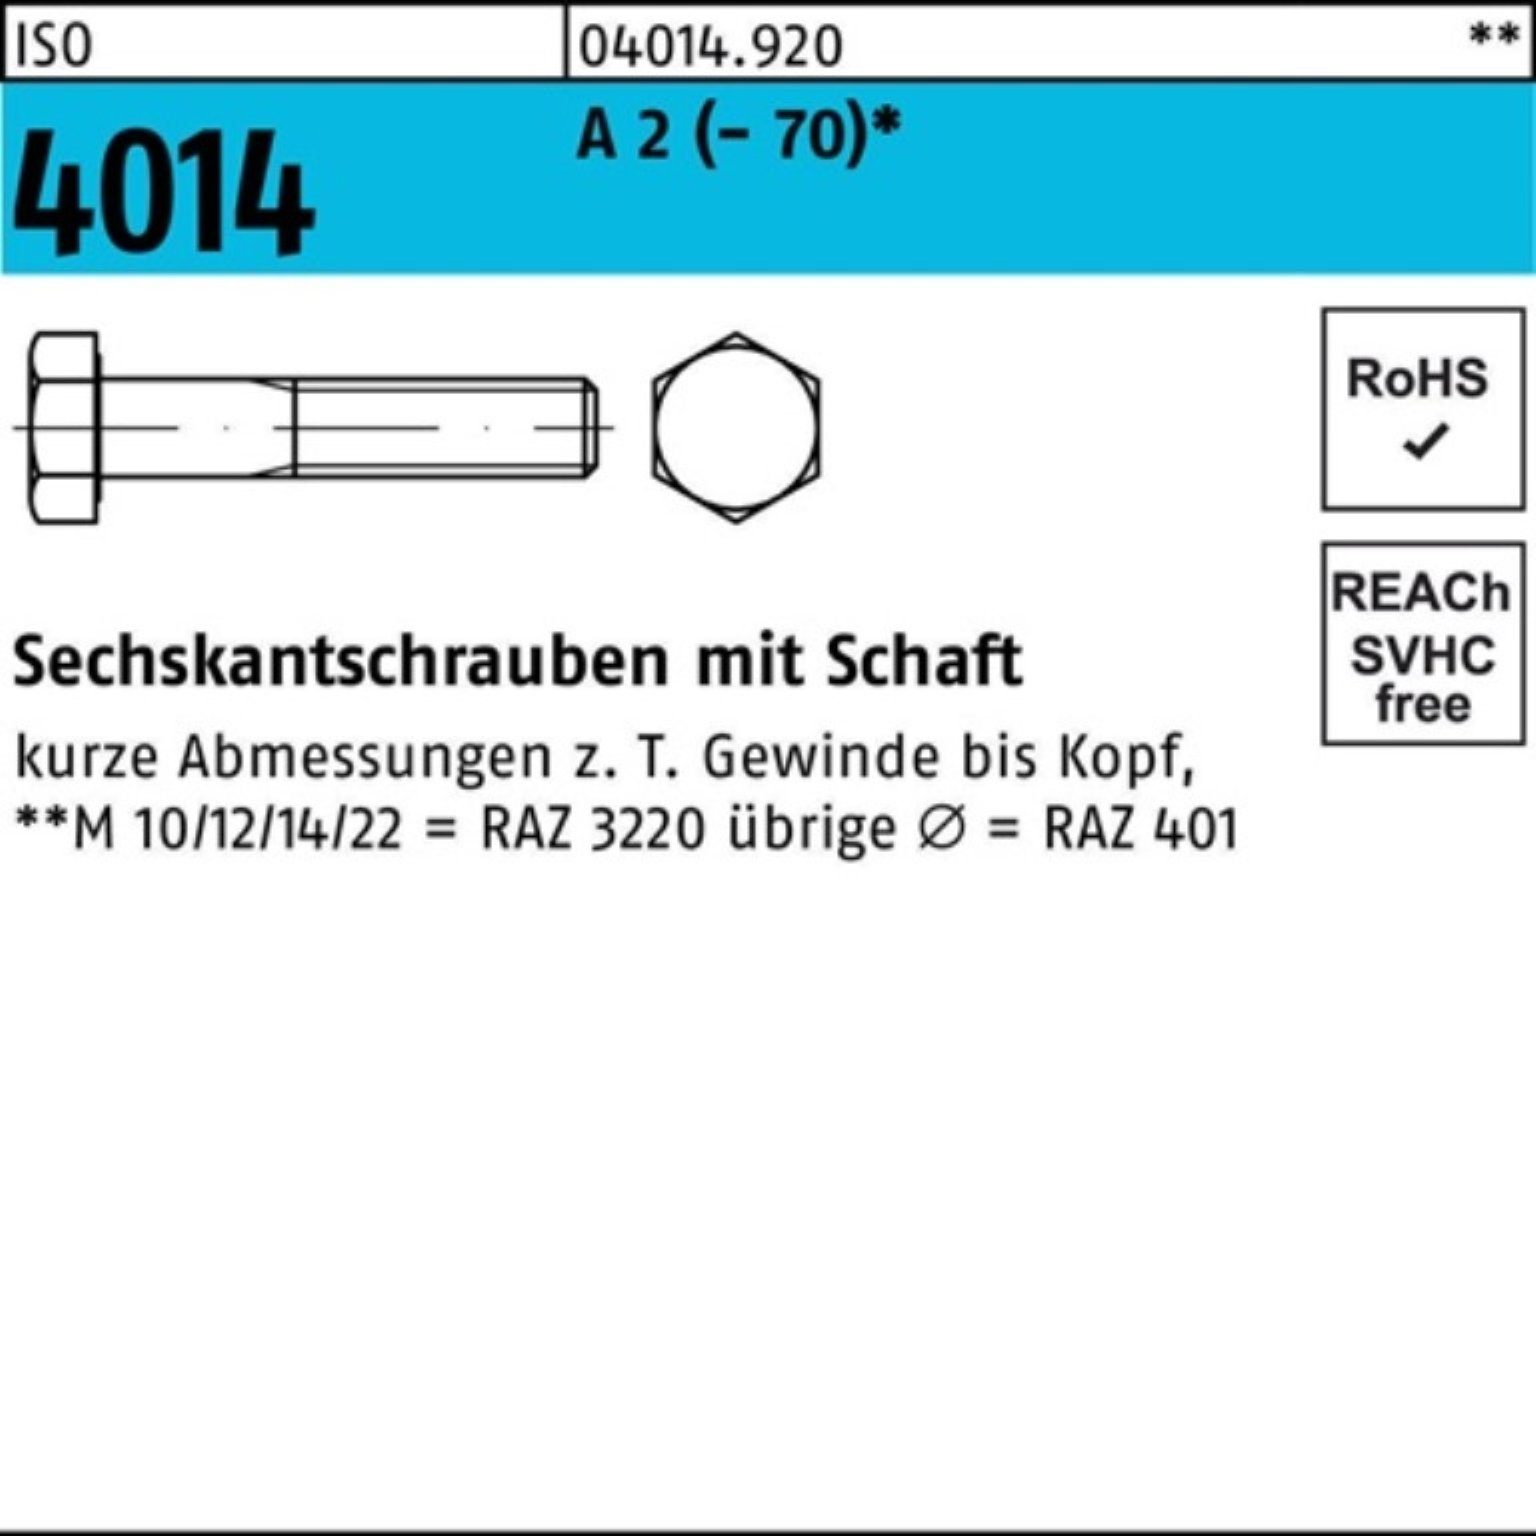 Bufab Sechskantschraube 100er Pack Sechskantschraube ISO 4014 Schaft M20x 110 A 2 (70) 1 St